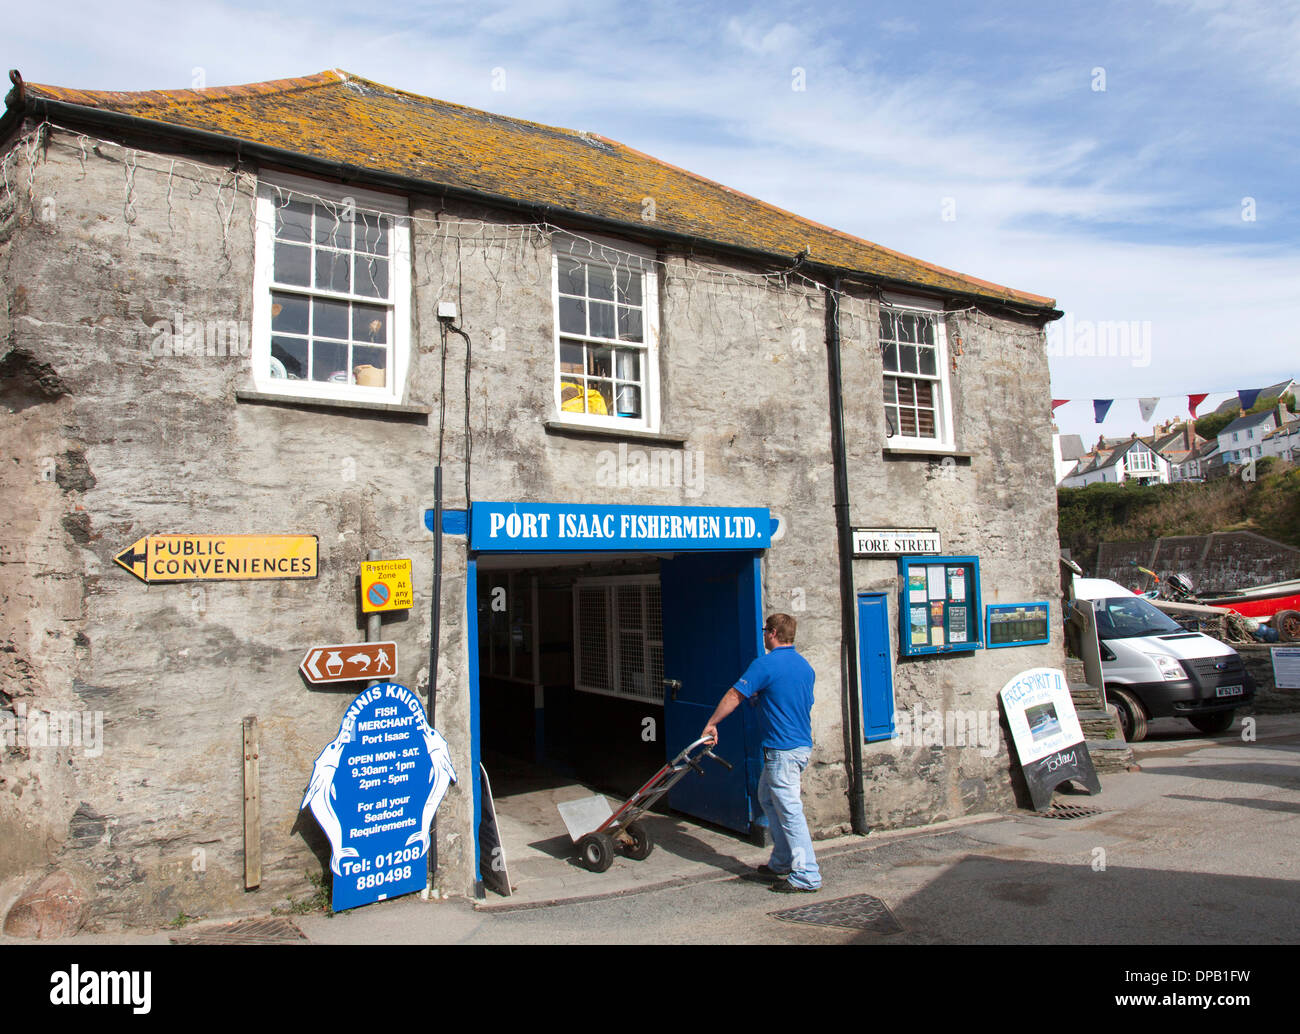 Les pêcheurs de Port Isaac Ltd. Poisson marchands dans port Isaac, Cornwall, Royaume-Uni Banque D'Images